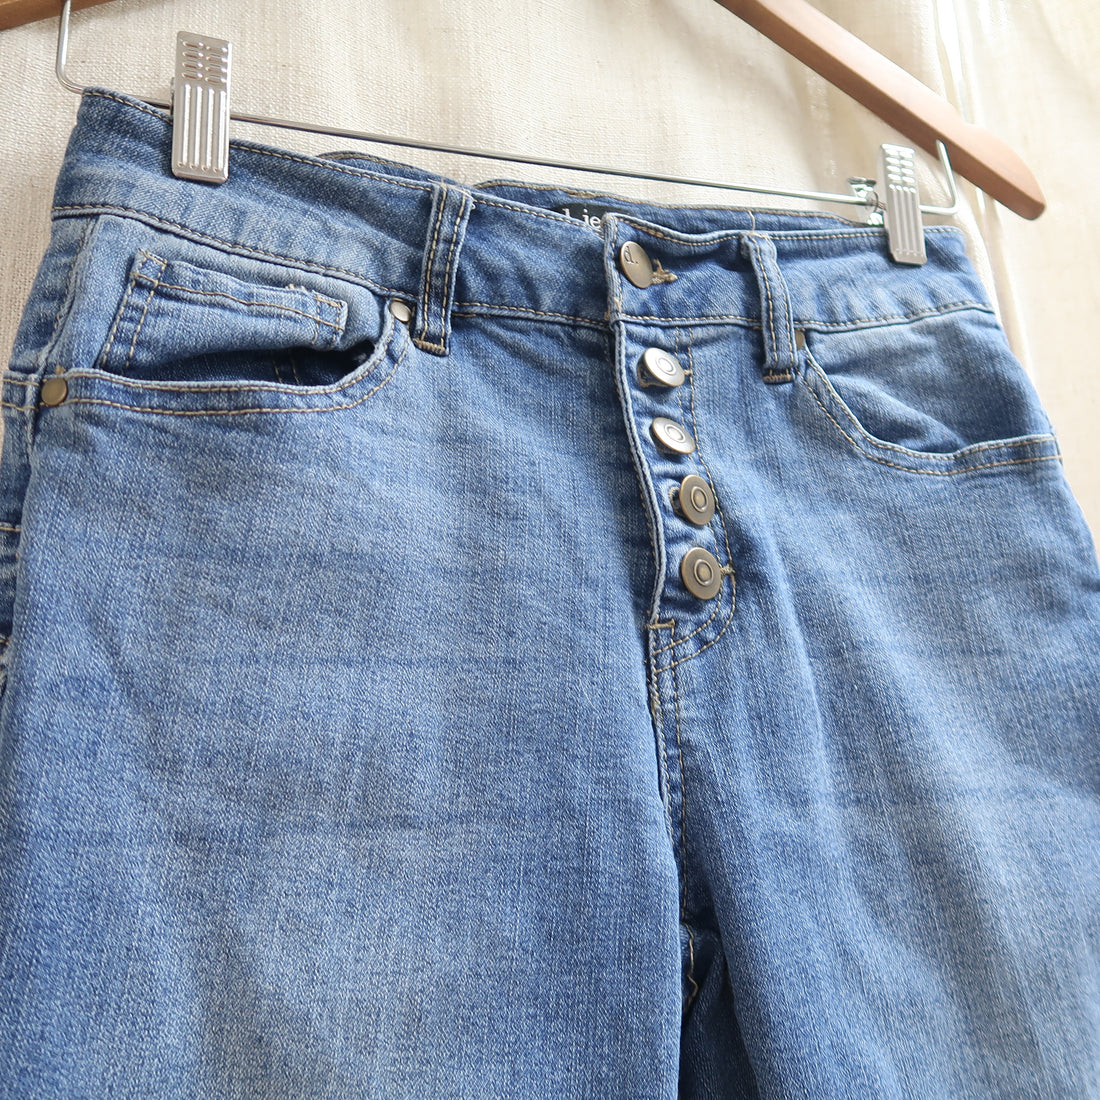 d. jeans - Pants (Women&